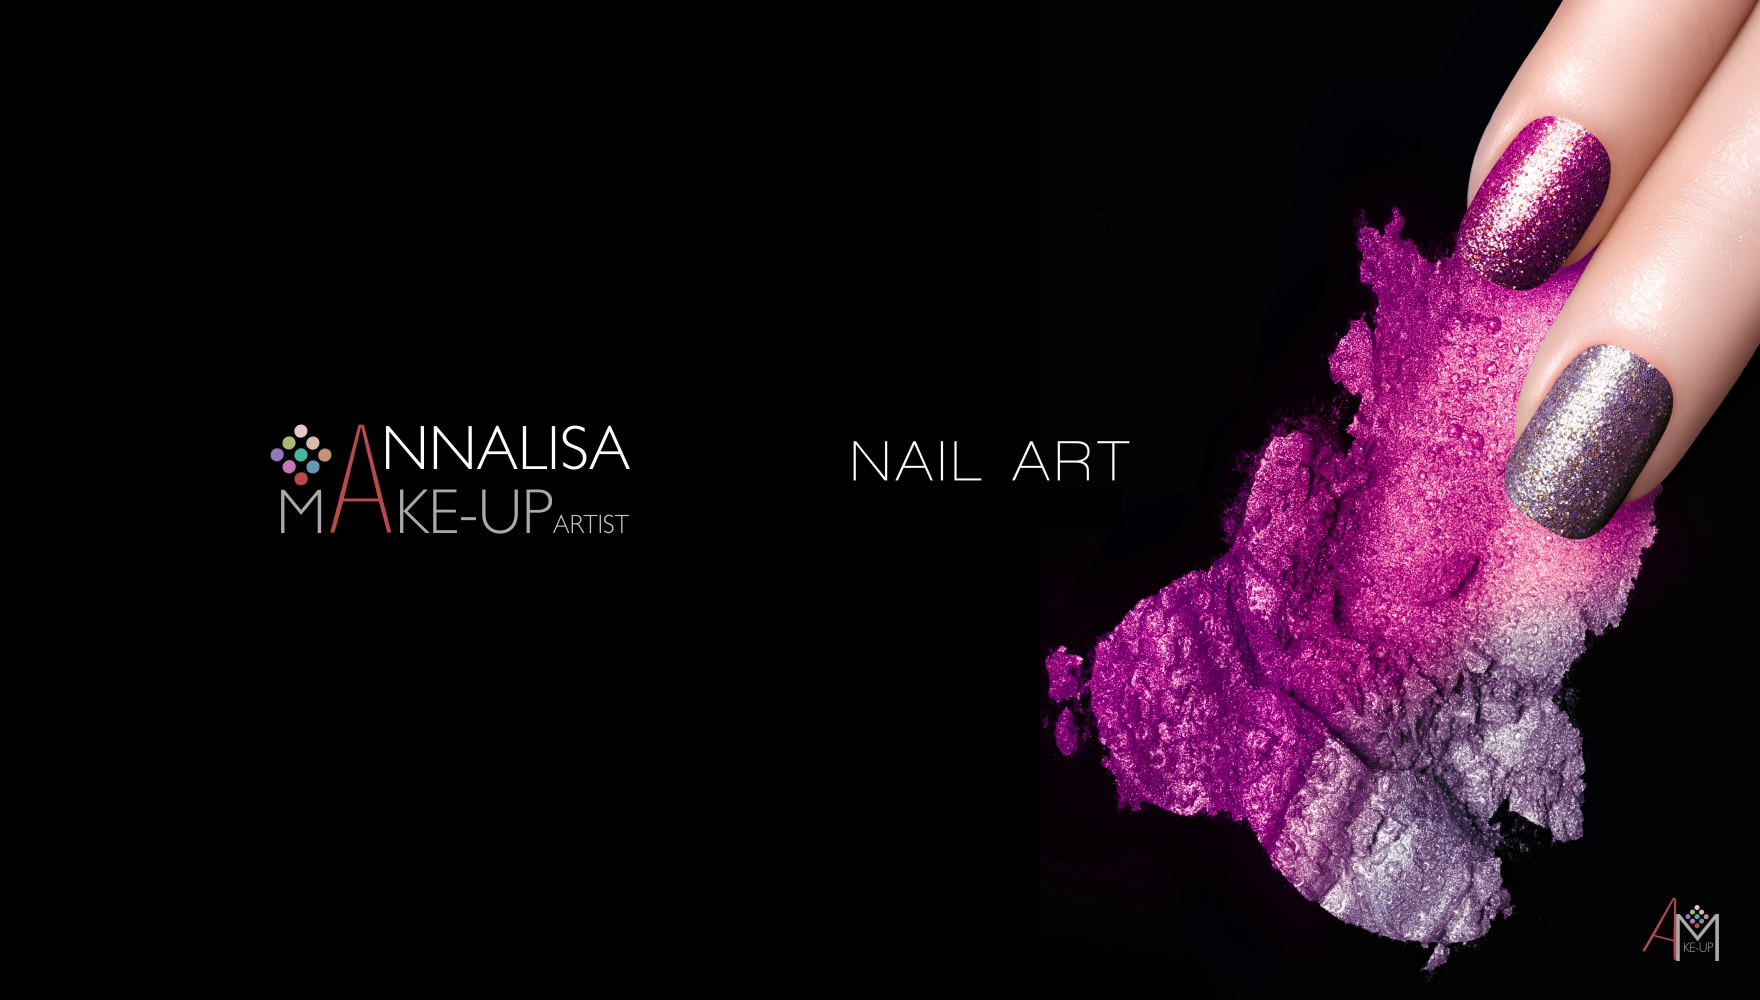 Centro estetico, makeup, trattamenti viso e corpo a Marsala, Annalisa Make-up Artist